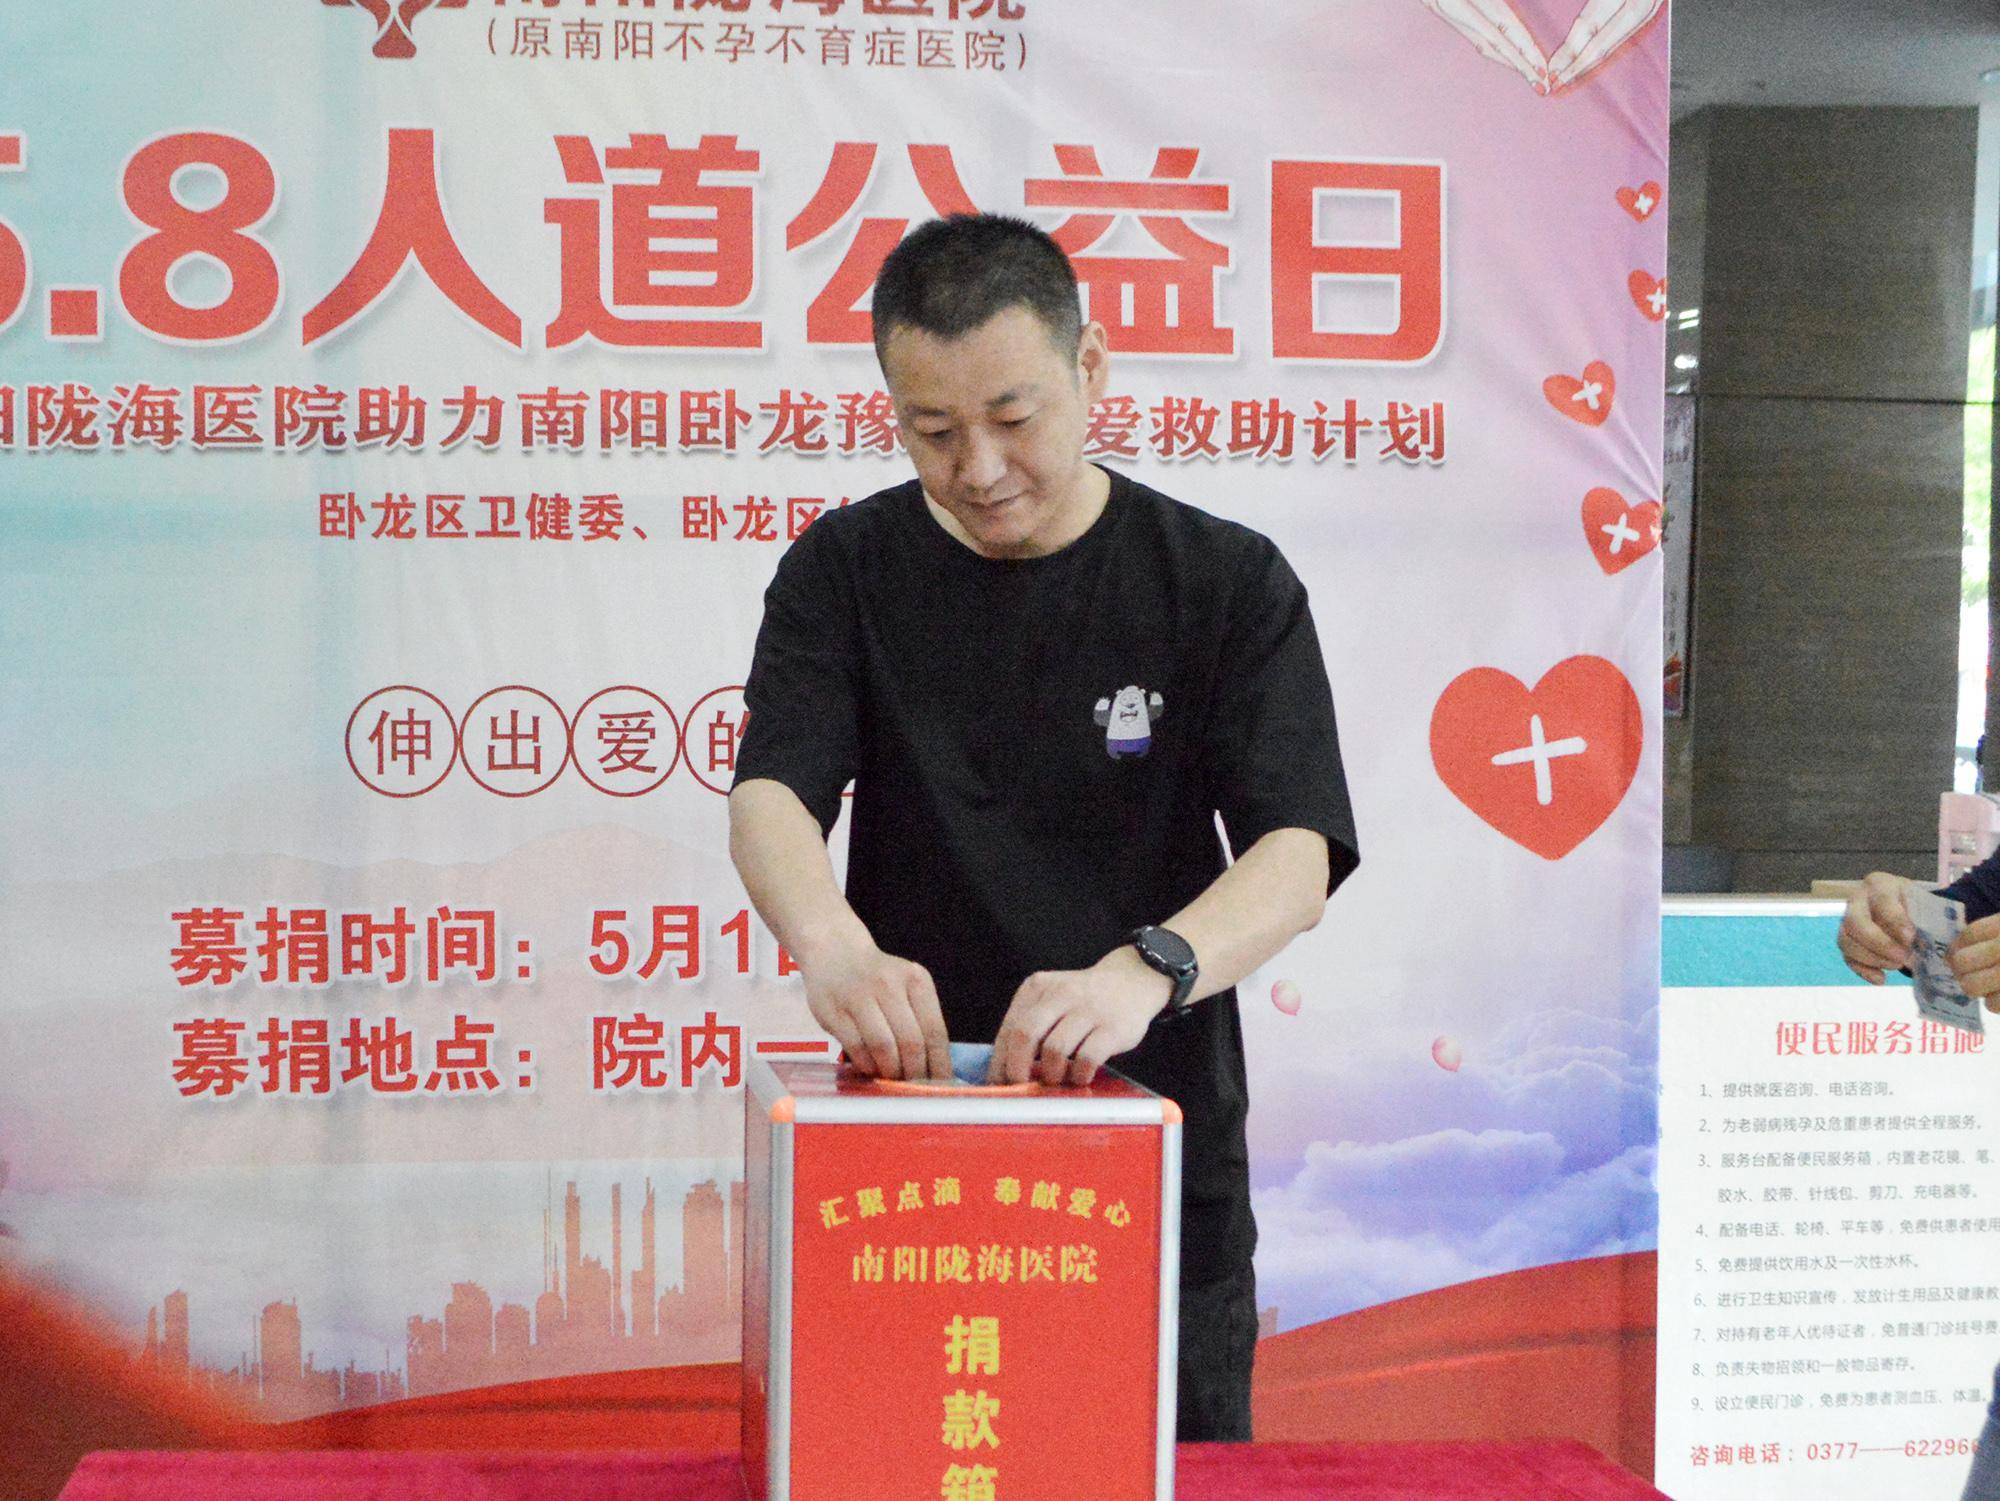 南阳陇海医院5·8人道公益日组织募捐活动,为爱助力!